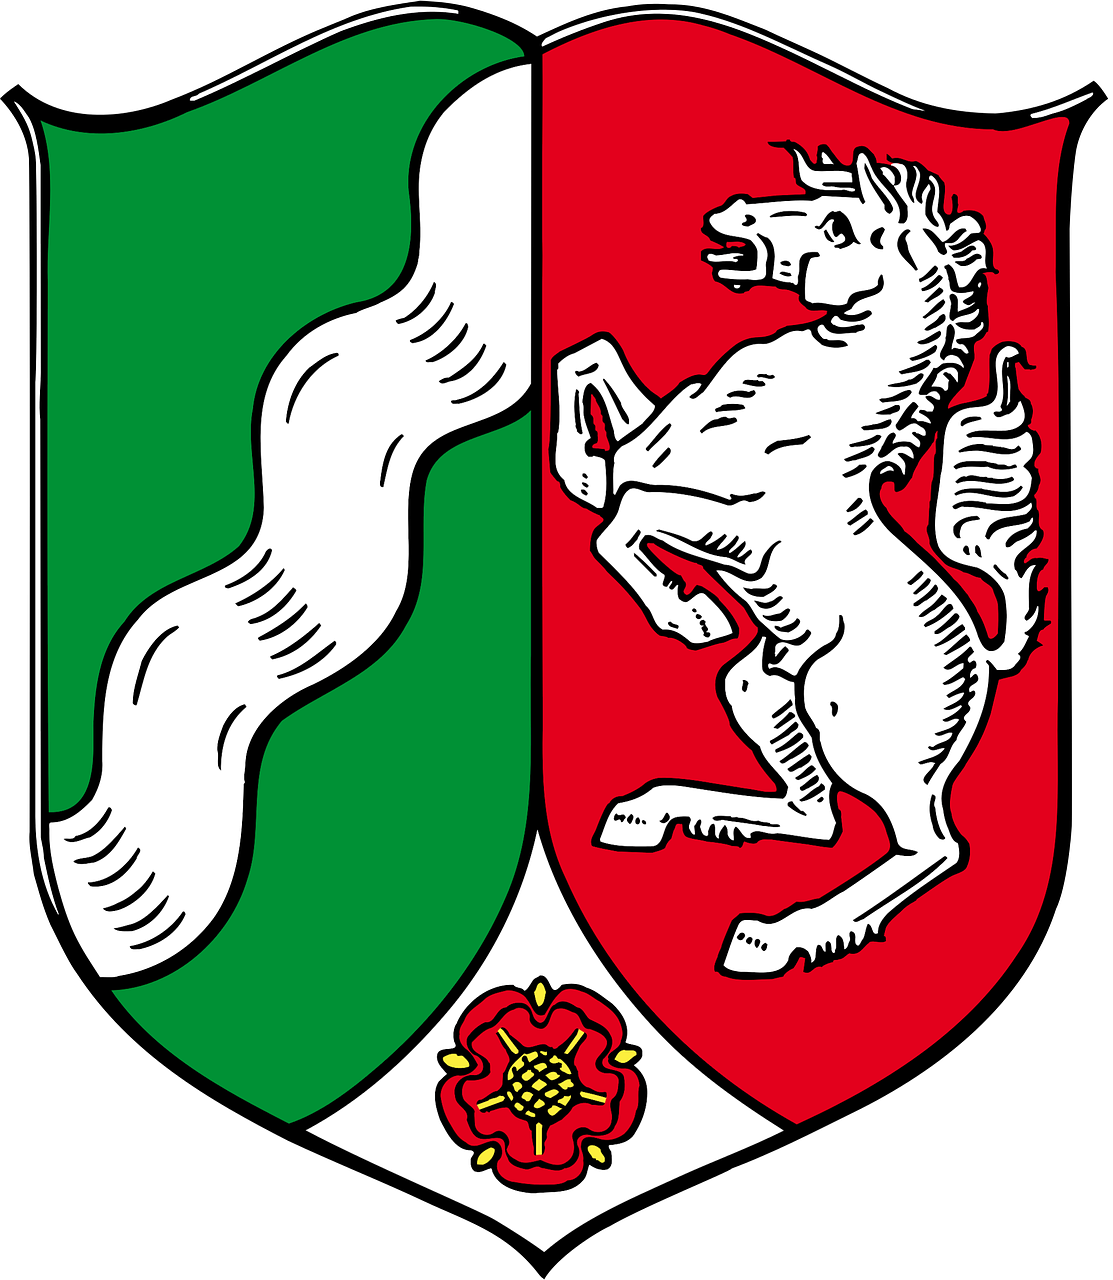 coat of arms north rhine-westphalia german free photo